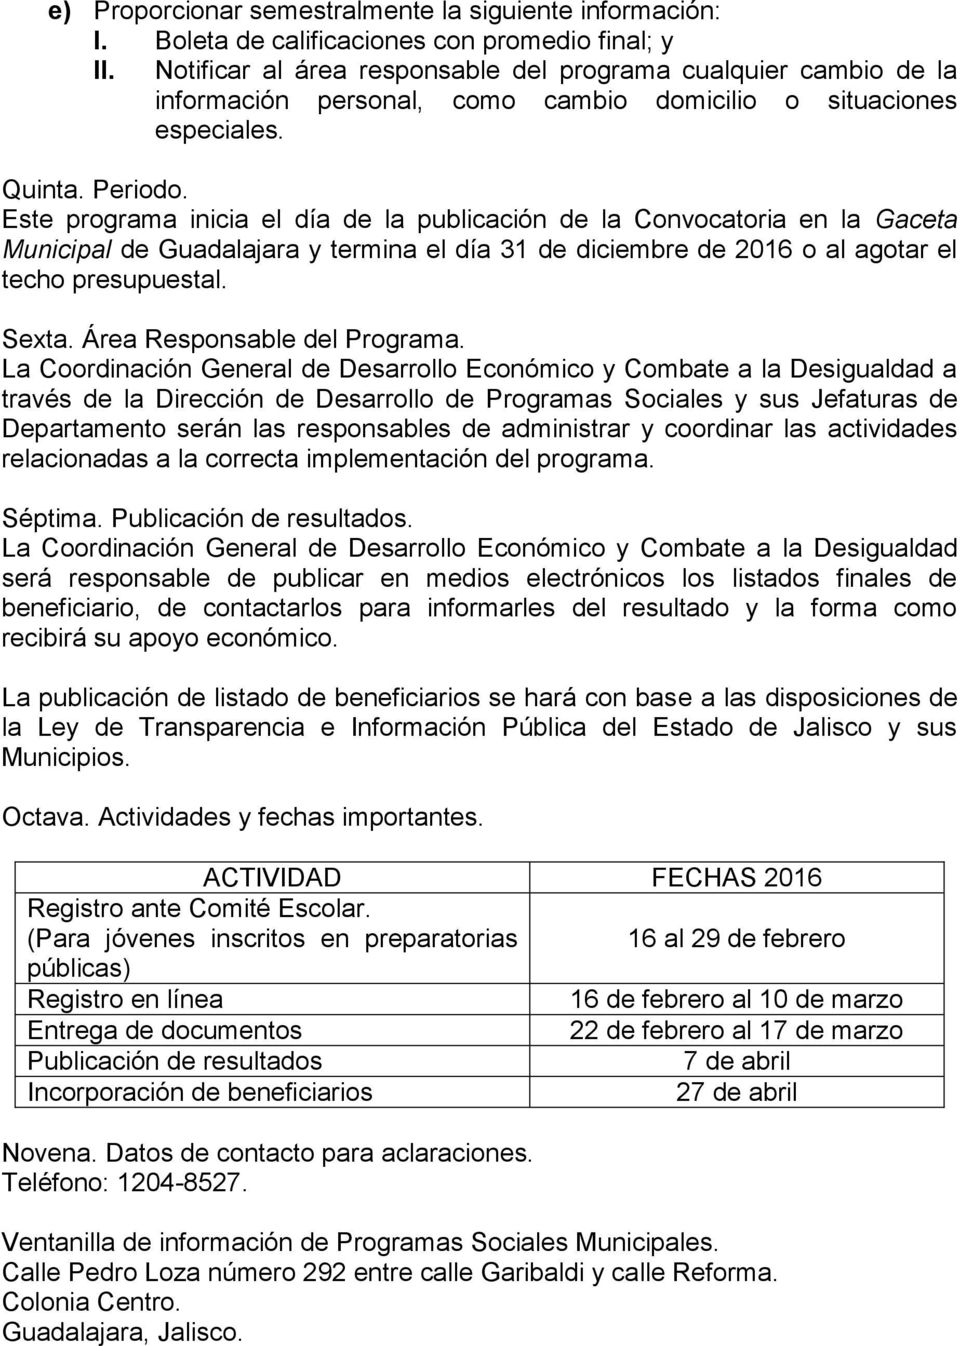 Este programa inicia el día de la publicación de la Convocatoria en la Gaceta Municipal de Guadalajara y termina el día 31 de diciembre de 2016 o al agotar el techo presupuestal. Sexta.